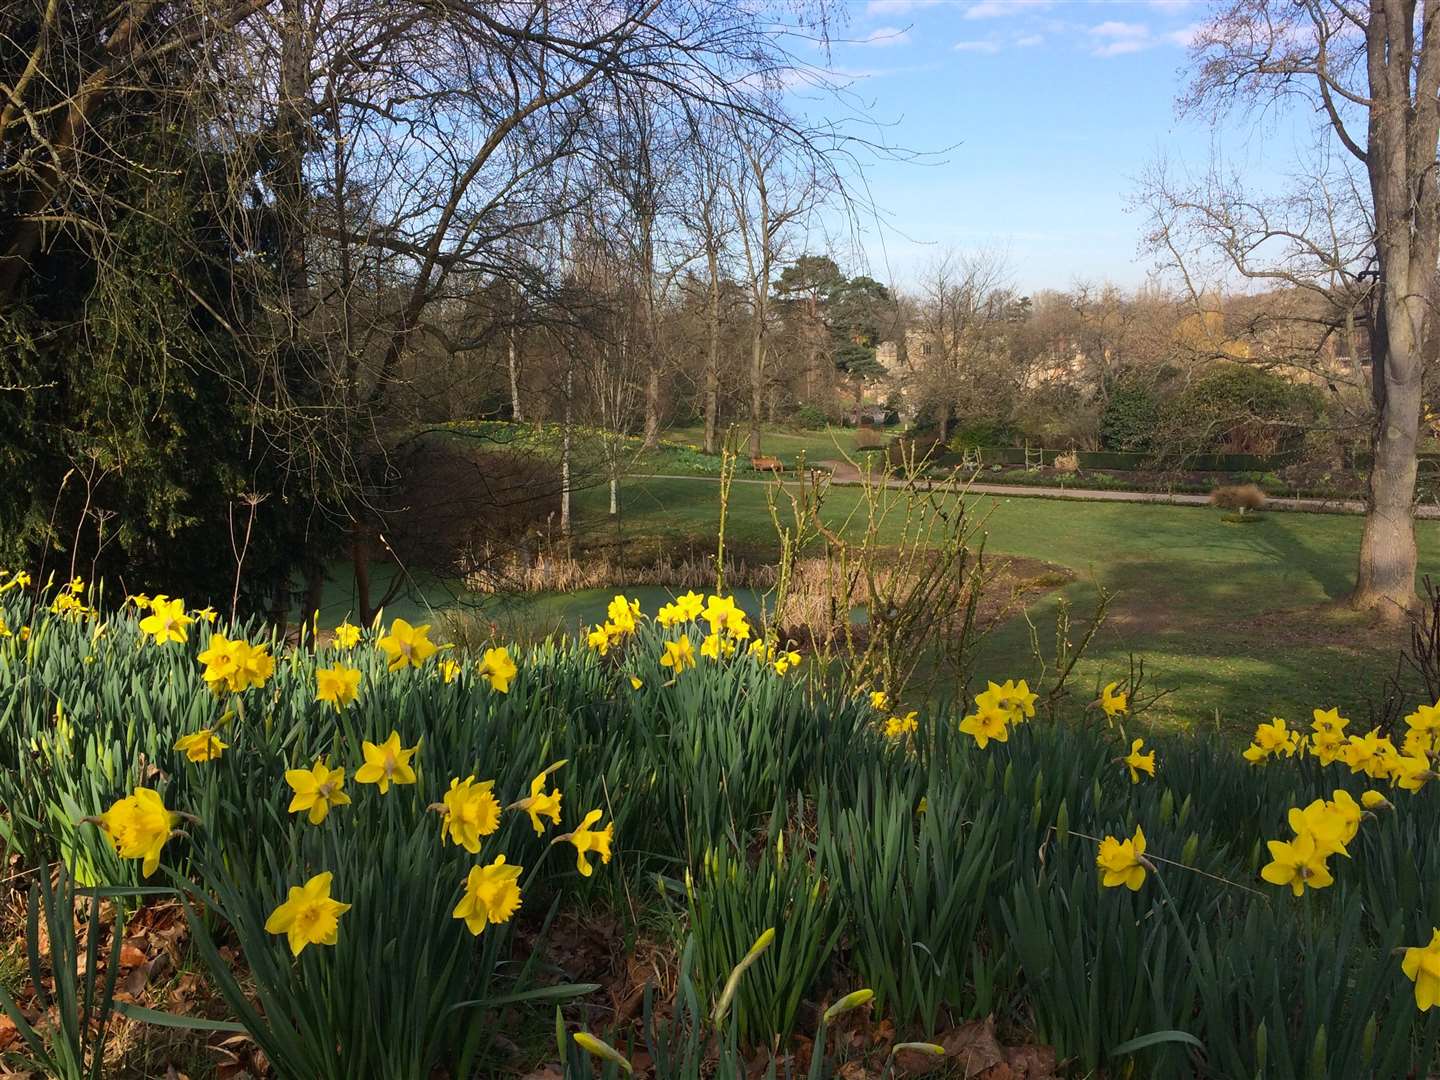 Daffodils on Anne Bolyen's walk